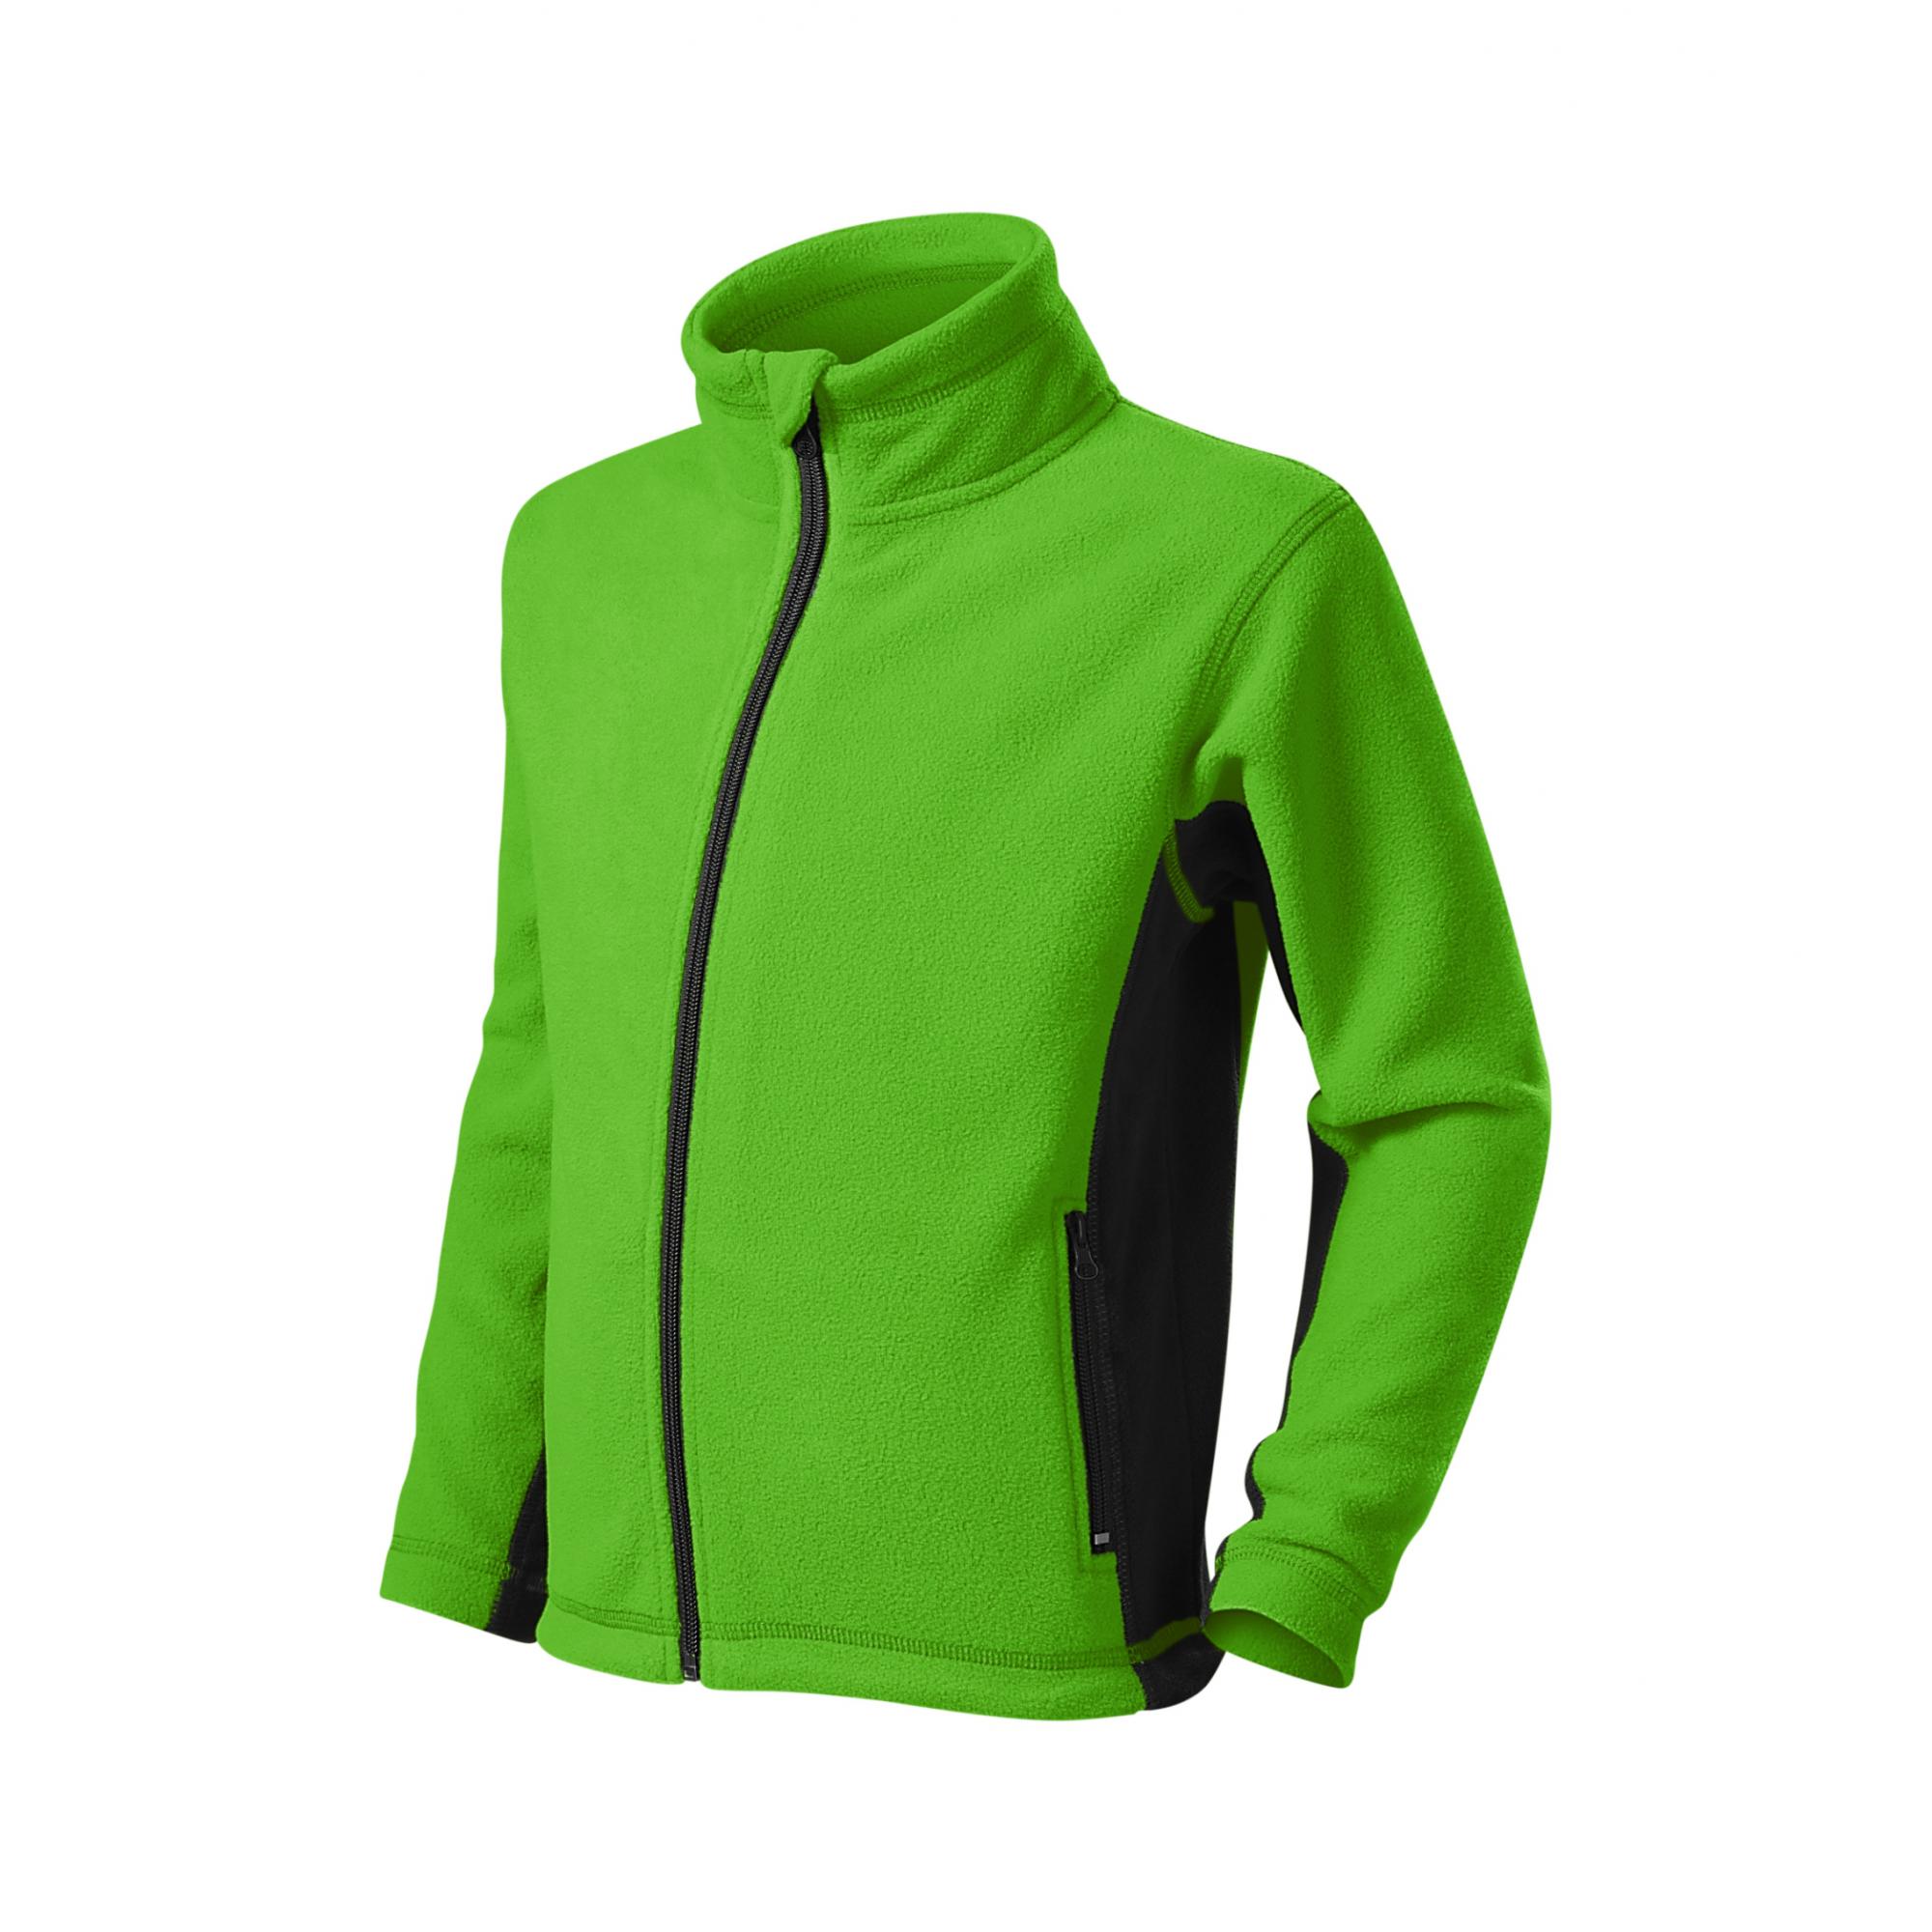 Jachetă fleece pentru copii Frosty 529 Verde mar 6ani